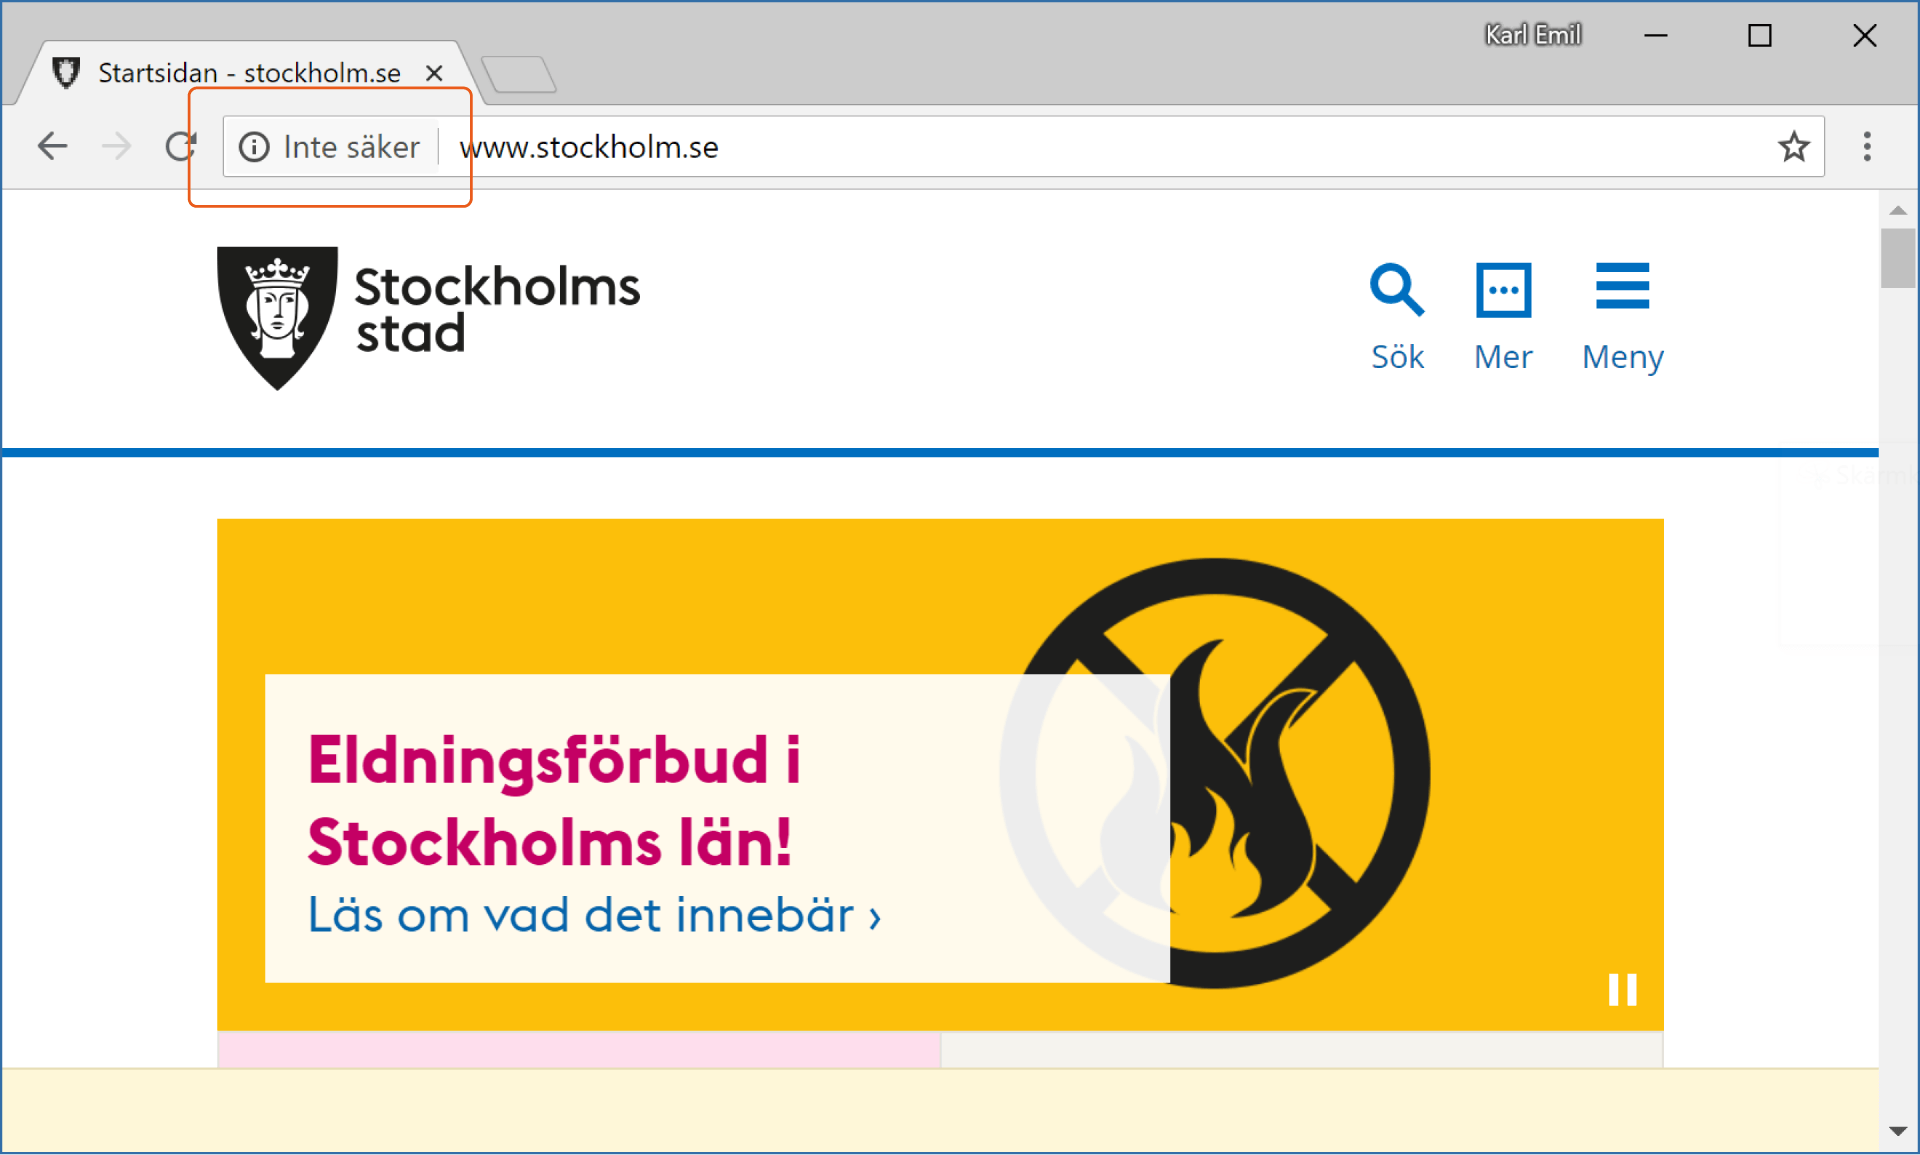 Stockholm stads webbplats efter Google Chrome-uppdateringen